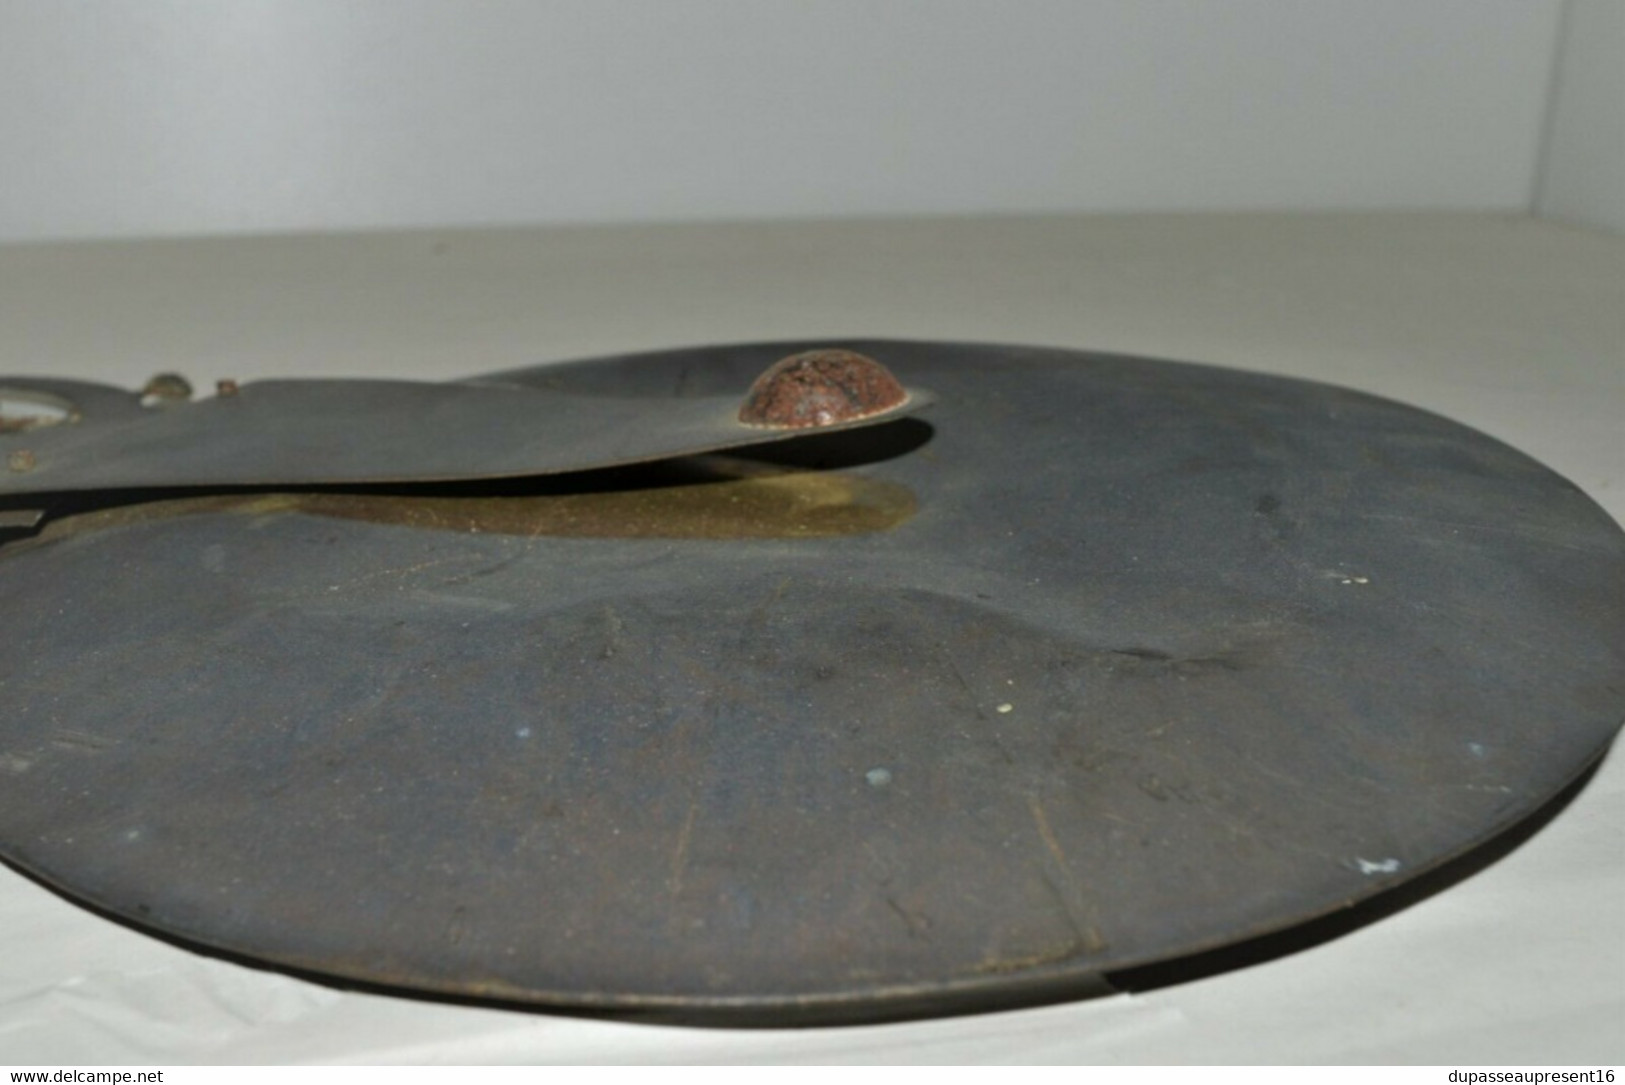 RARE BALANCIER HORLOGE COMTOISE PENDULE ANCIENNE plaque émaillée collection pendule ancienne